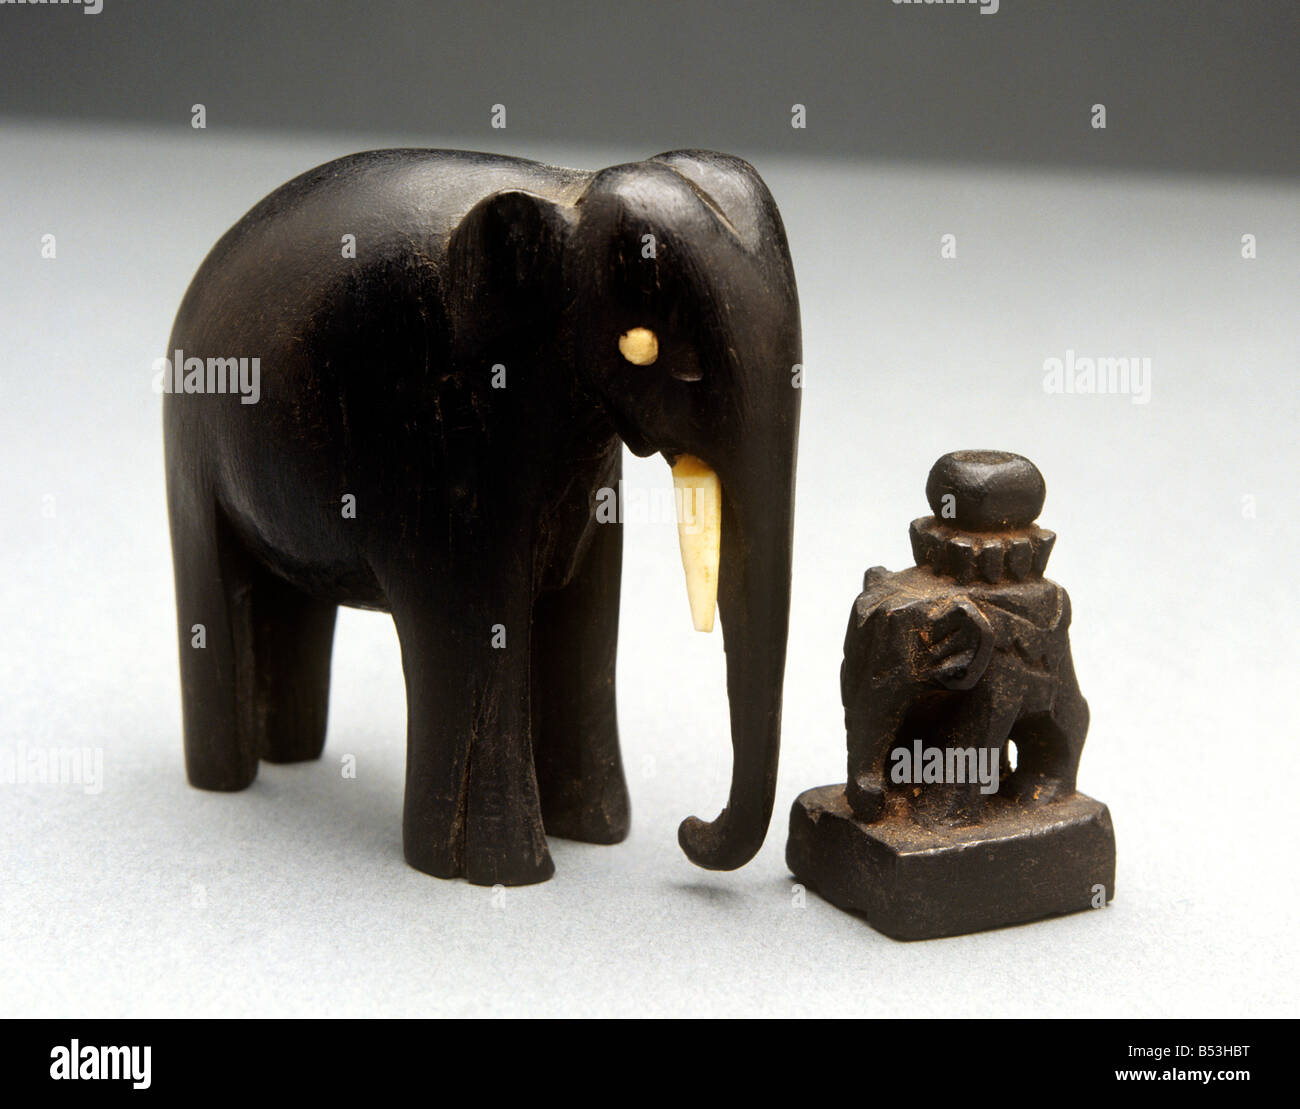 Artigianato birmano ebano sculture di elefante più piccolo di 3 cm di altezza Foto Stock